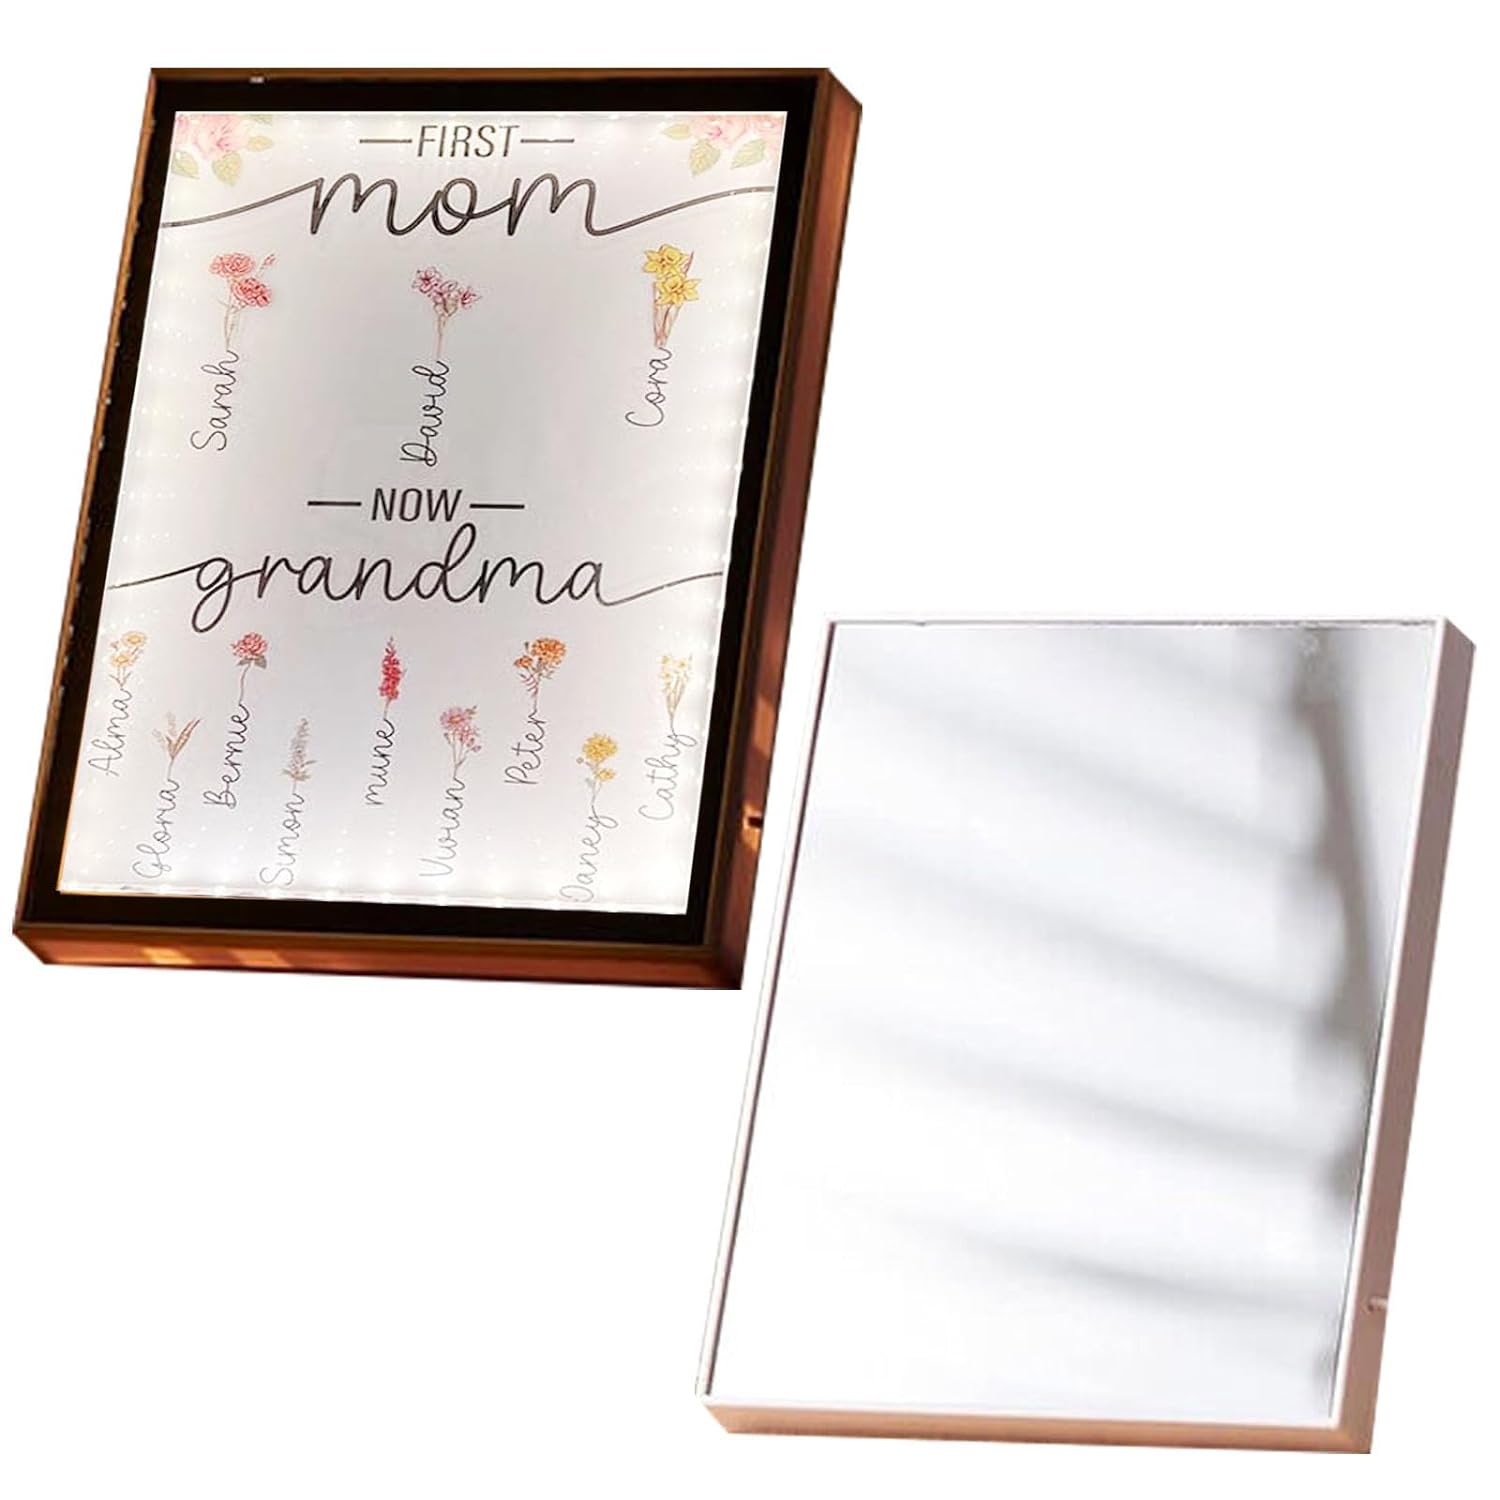 Lampada da specchio personalizzata con nome a LED per specchio per la festa della mamma, luce notturna personalizzata per la prima mamma e ora per la nonna 